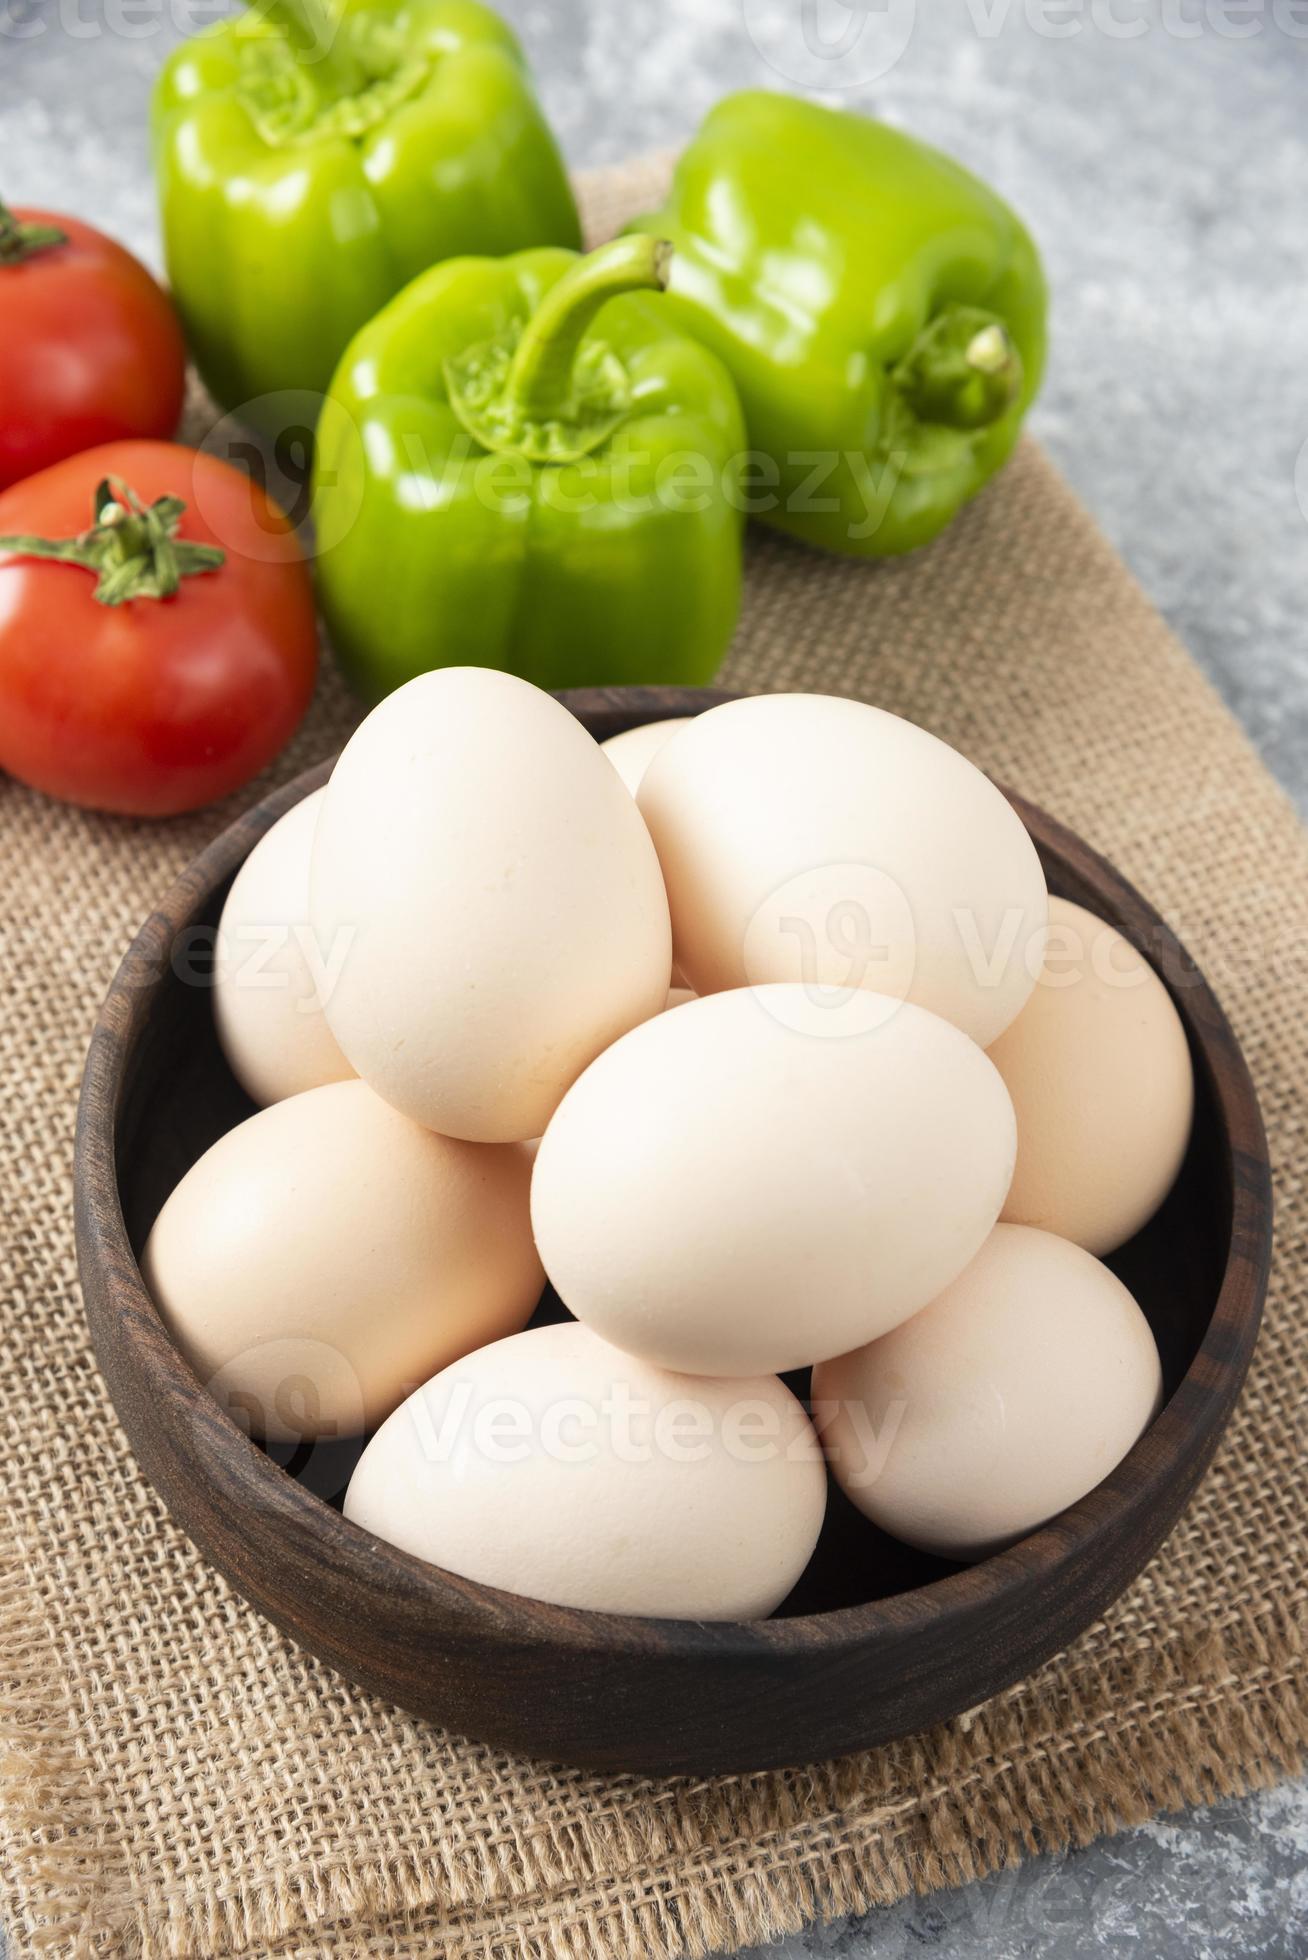 ciotola di legno piena di uova di gallina crude con verdure fresche mature su una tela di sacco foto